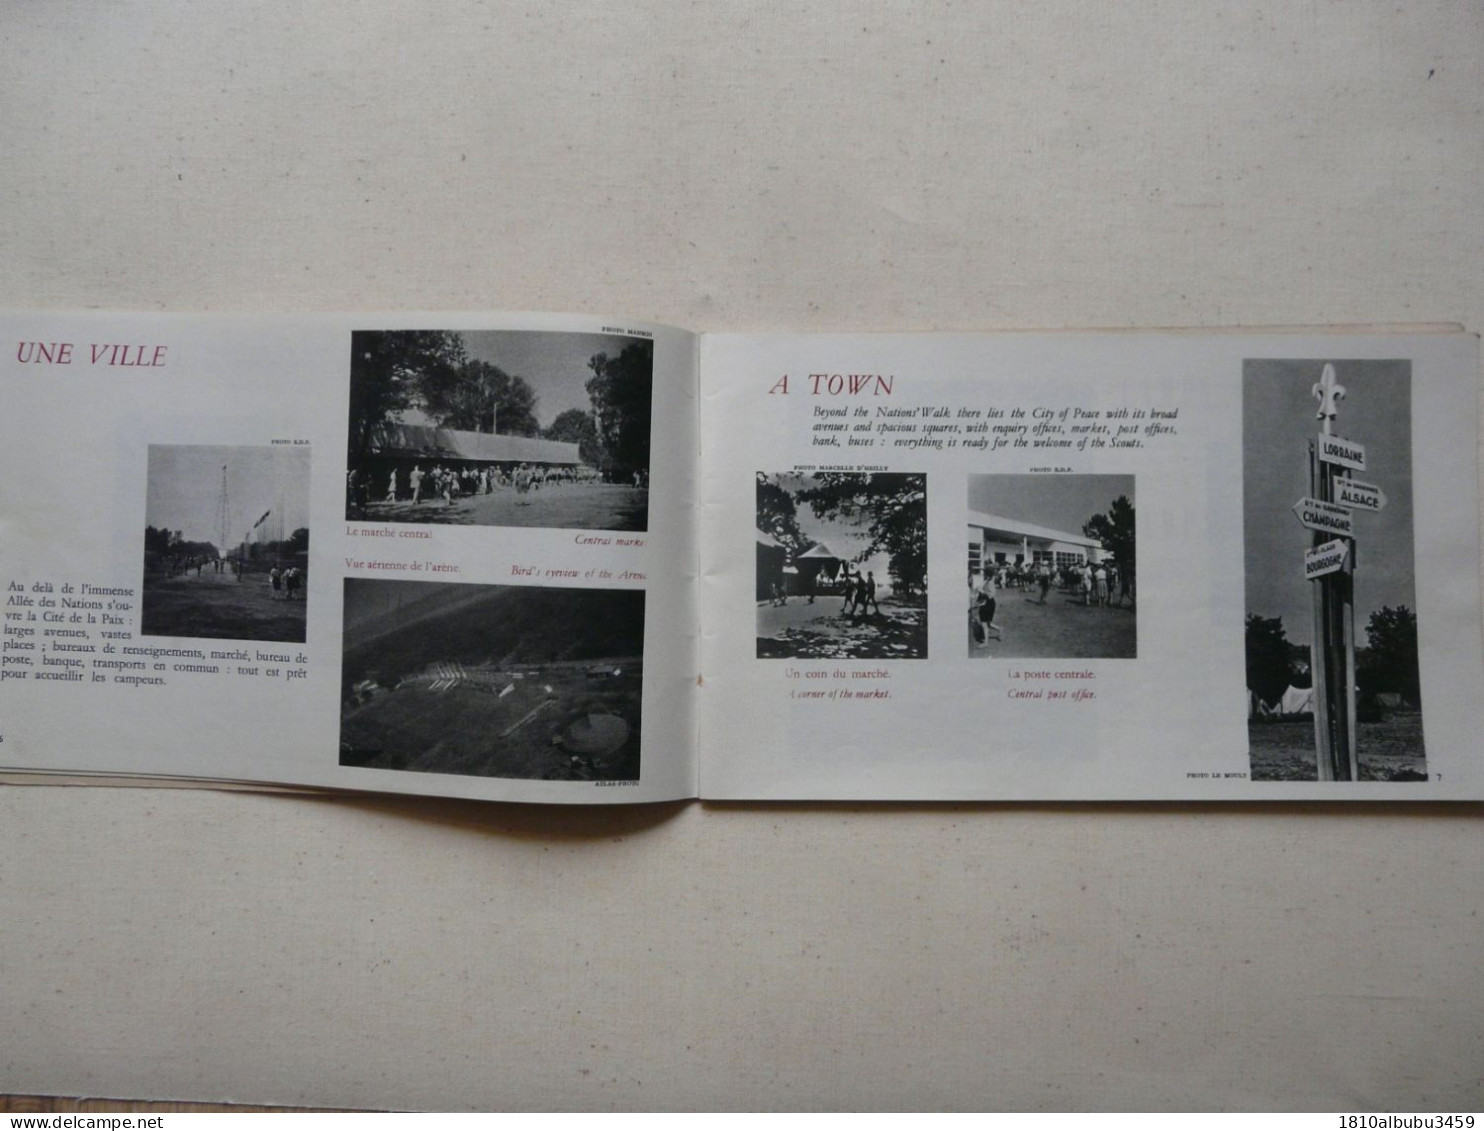 LE JAMBOREE DE LA PAIX - MOISSON 1947 : Broché 72 Pages - Nombreuses Illustrations Et Photos En Noir Et Blanc - Padvinderij